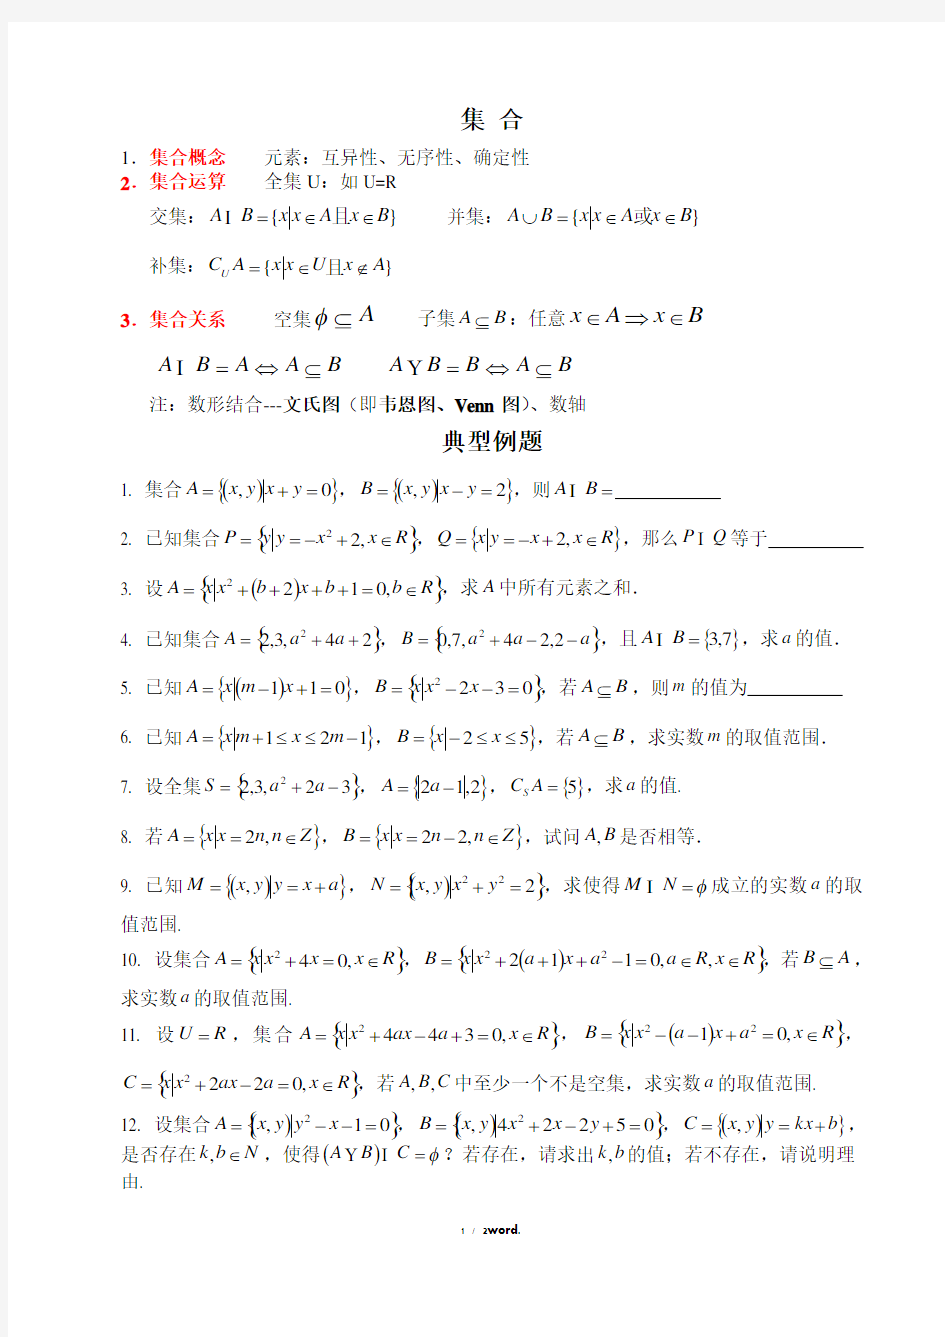 高中数学集合典型例题新选.